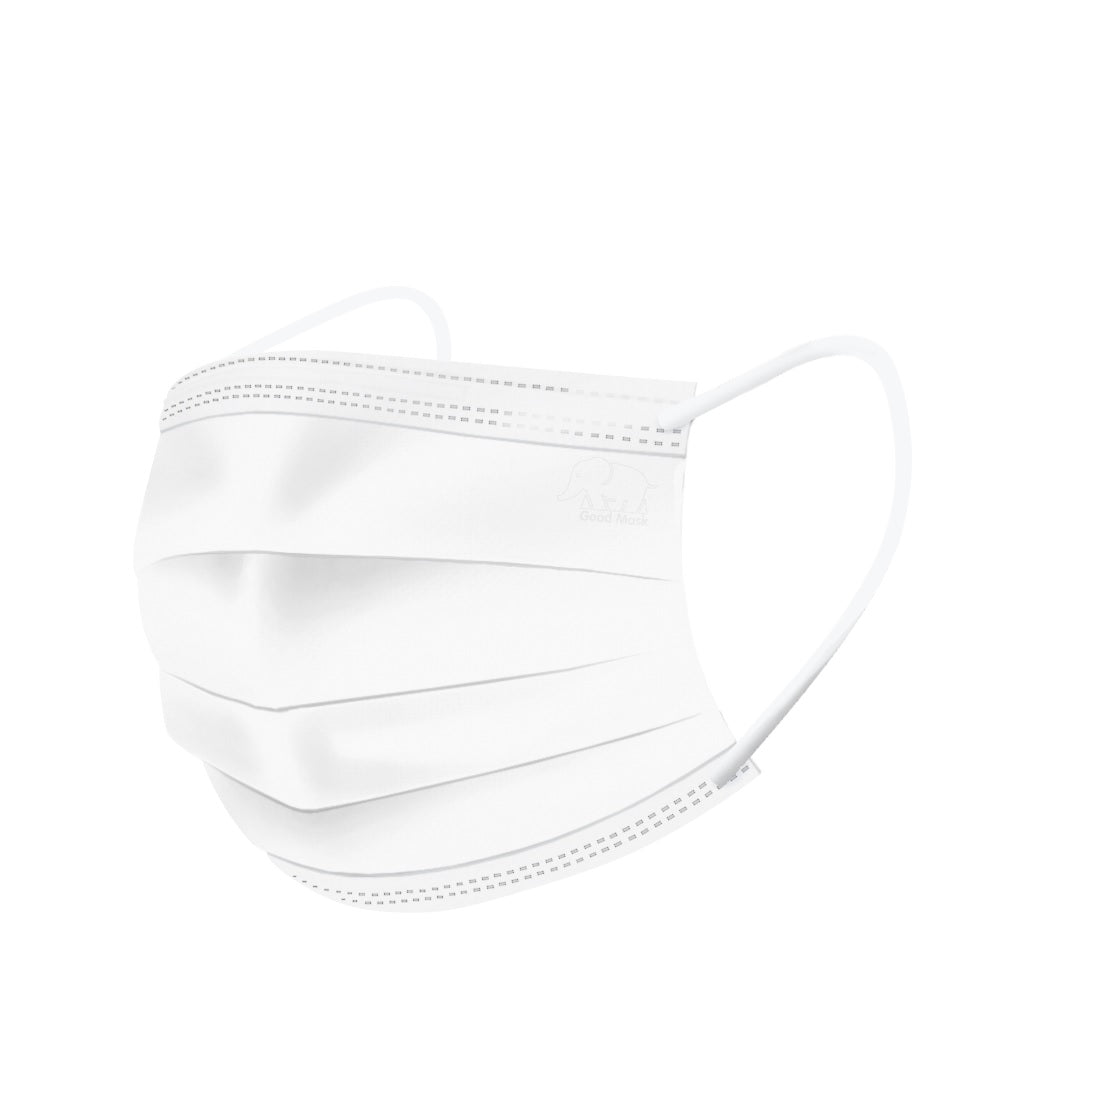 Good Mask 99 "Individual Packed" (Toddler) 30pcs - Glacier White (Made in Hong Kong)